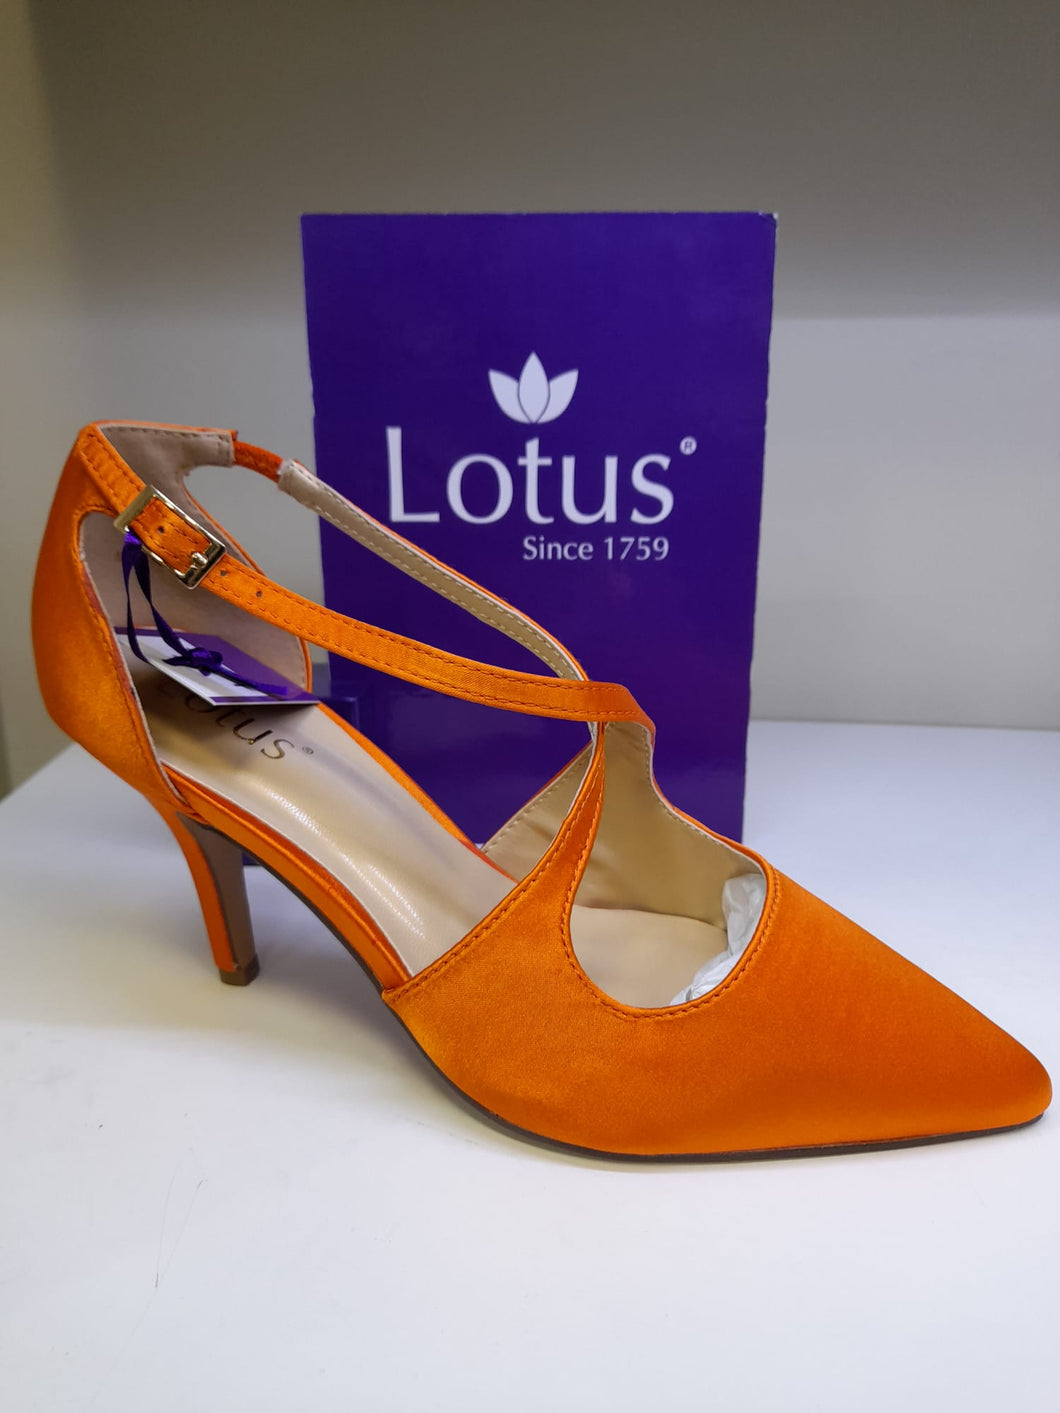 Lotus Ladies Smart Shoe - Orange Satin